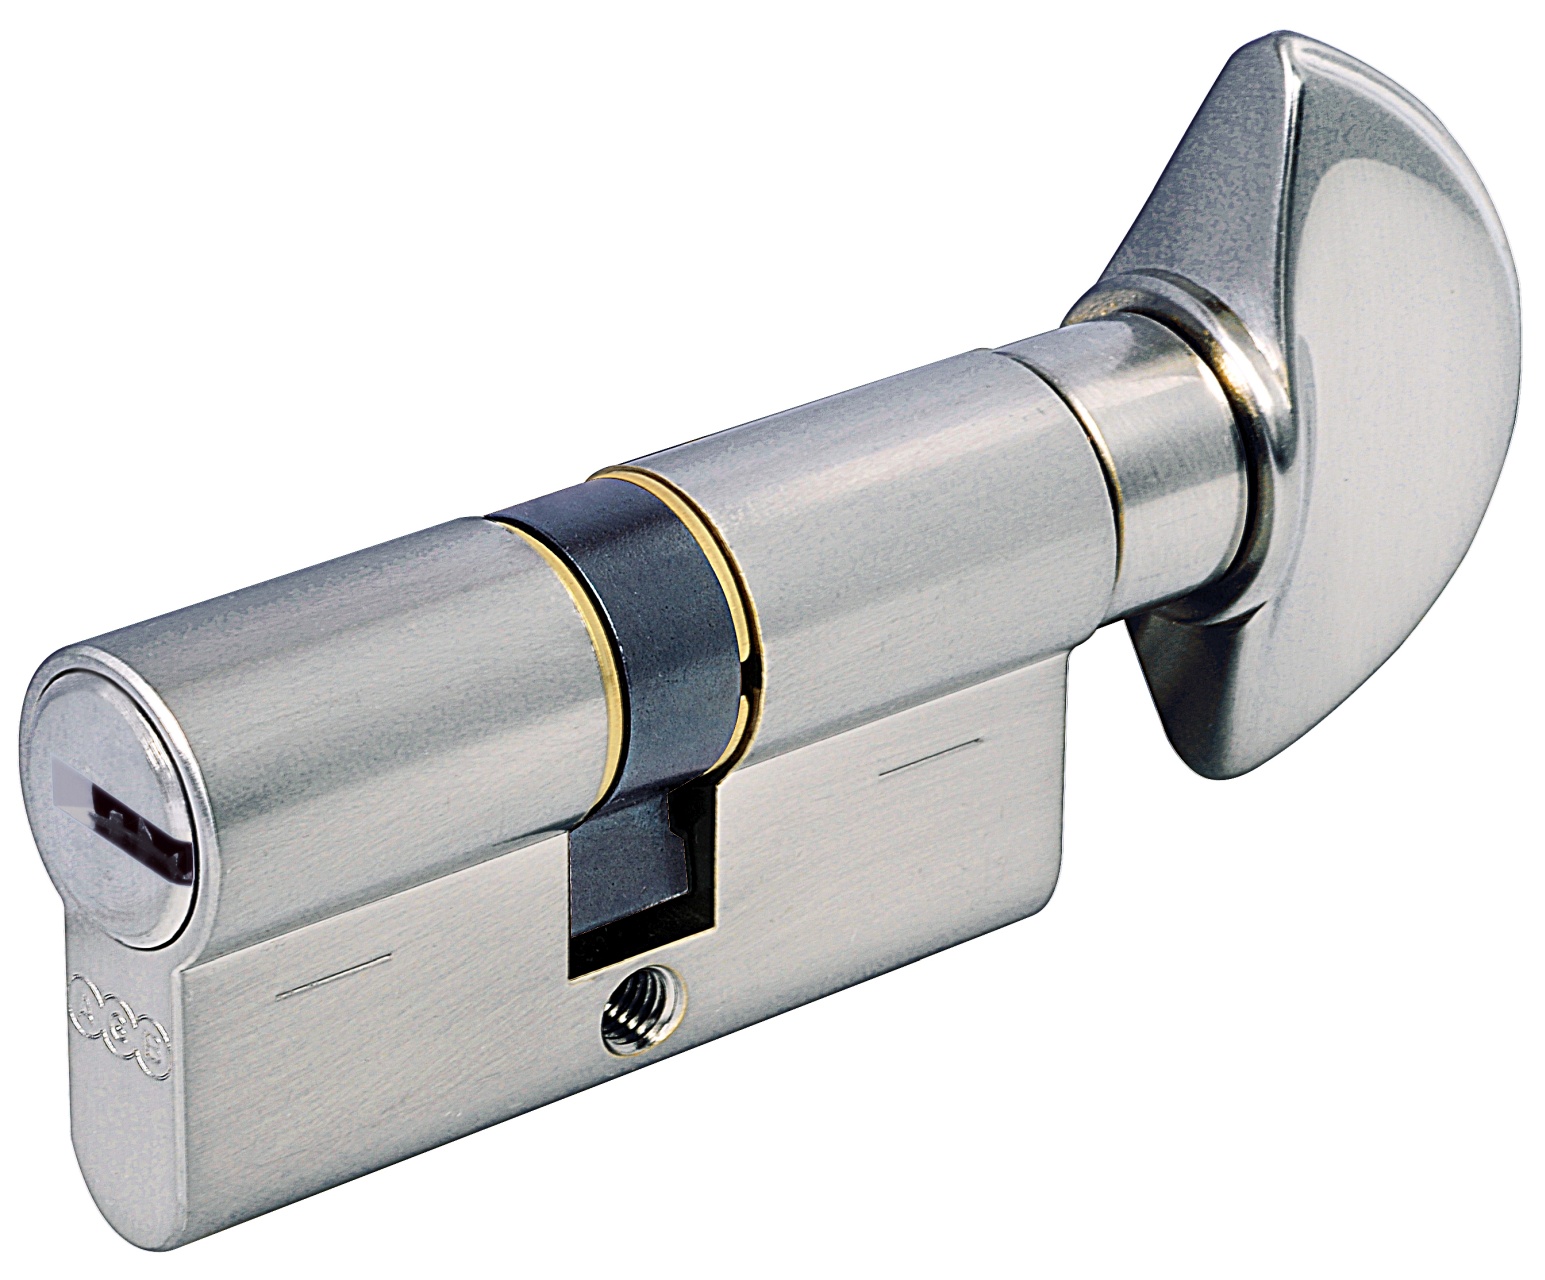 AGB -  Cilindro SCUDO 5000 PS frizionato anti bamping con chiave e pomolo - col. LUCIDO VERNICIATO - lunghezza 90 - misura P-35-10-45